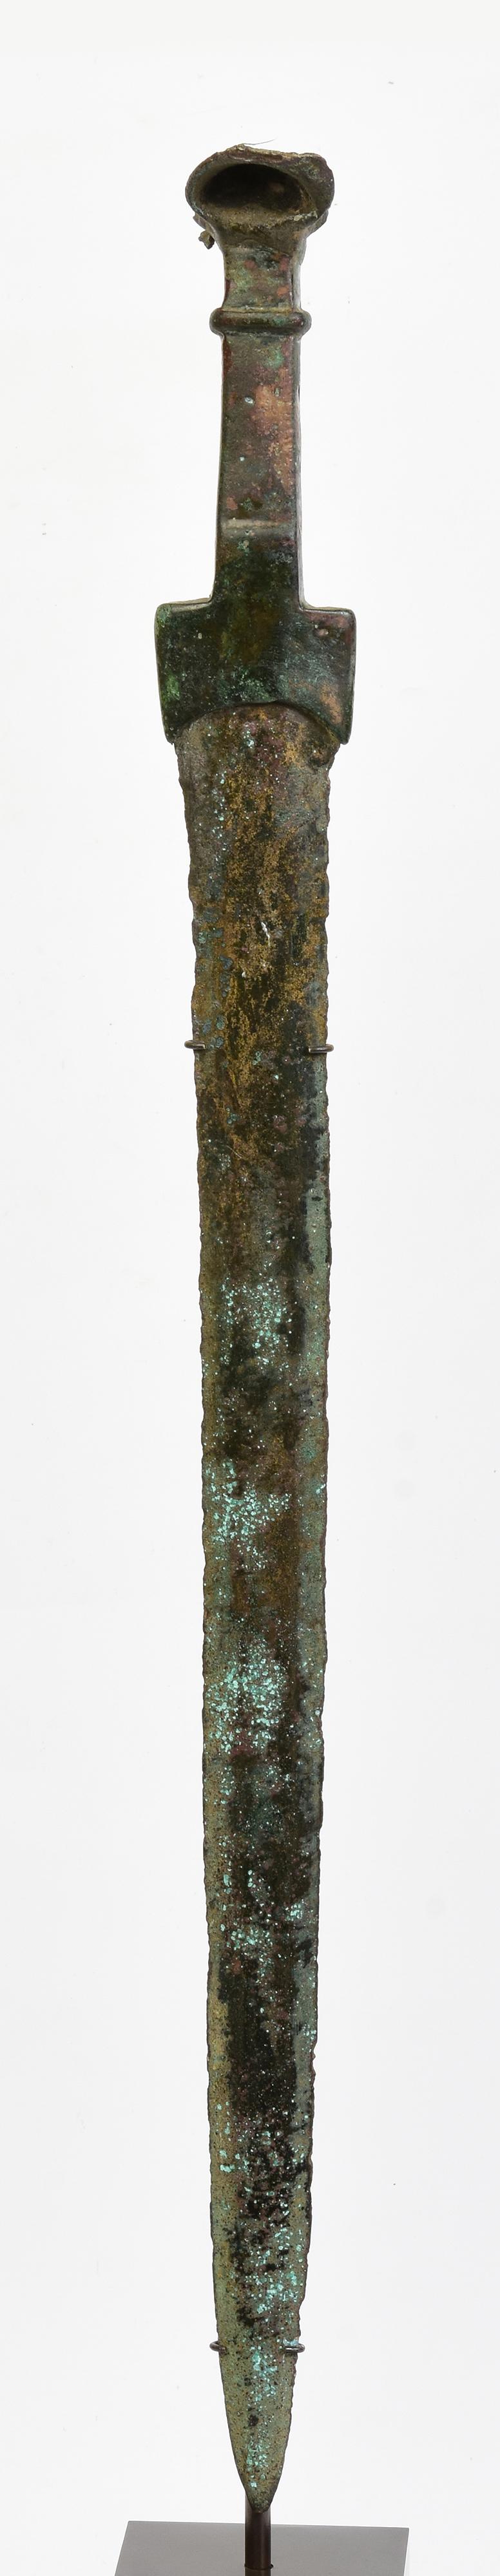 Antikes Bronzeschwert aus Luristan mit grüner Patina.

Luristan-Bronze stammt aus der Provinz Lorestan, einer Region im heutigen Westiran im Zagros-Gebirge. Mit ihrer reichen und langen Geschichte ist die luristanische Kultur für ihre faszinierenden